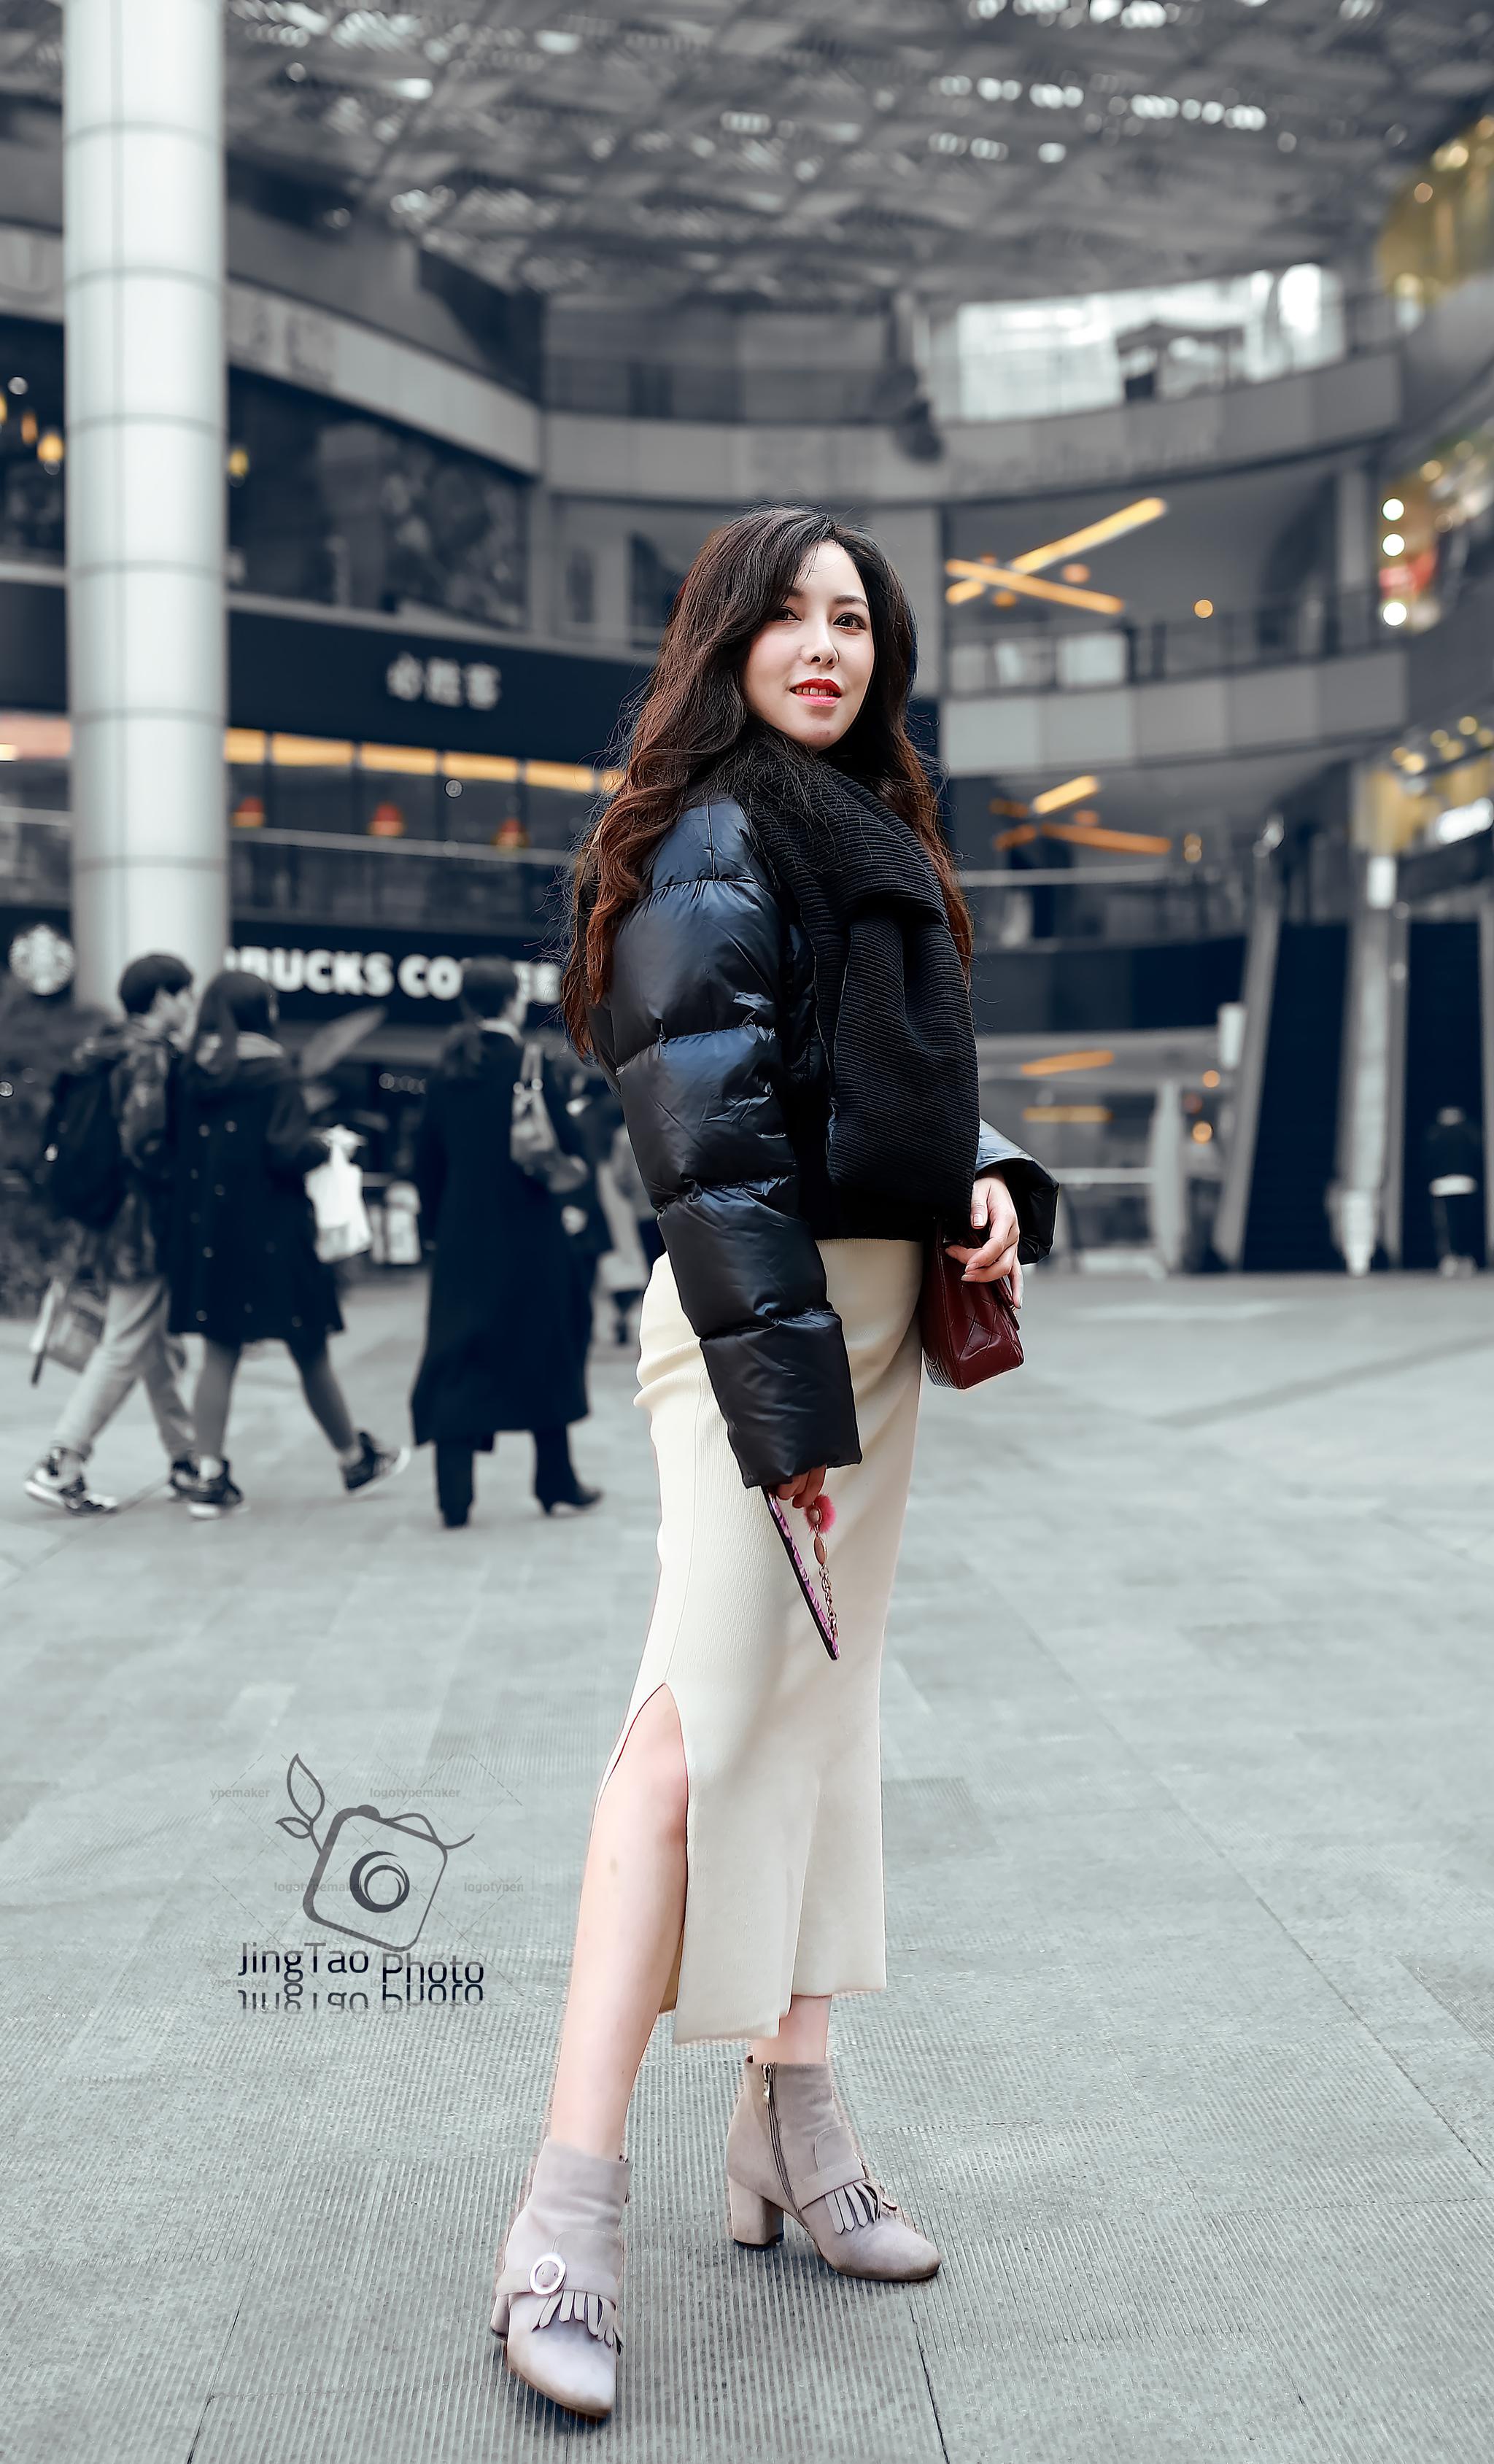 街霸的诞生——重庆2019年12月街拍集锦:图二小姐姐演绎杂志封面